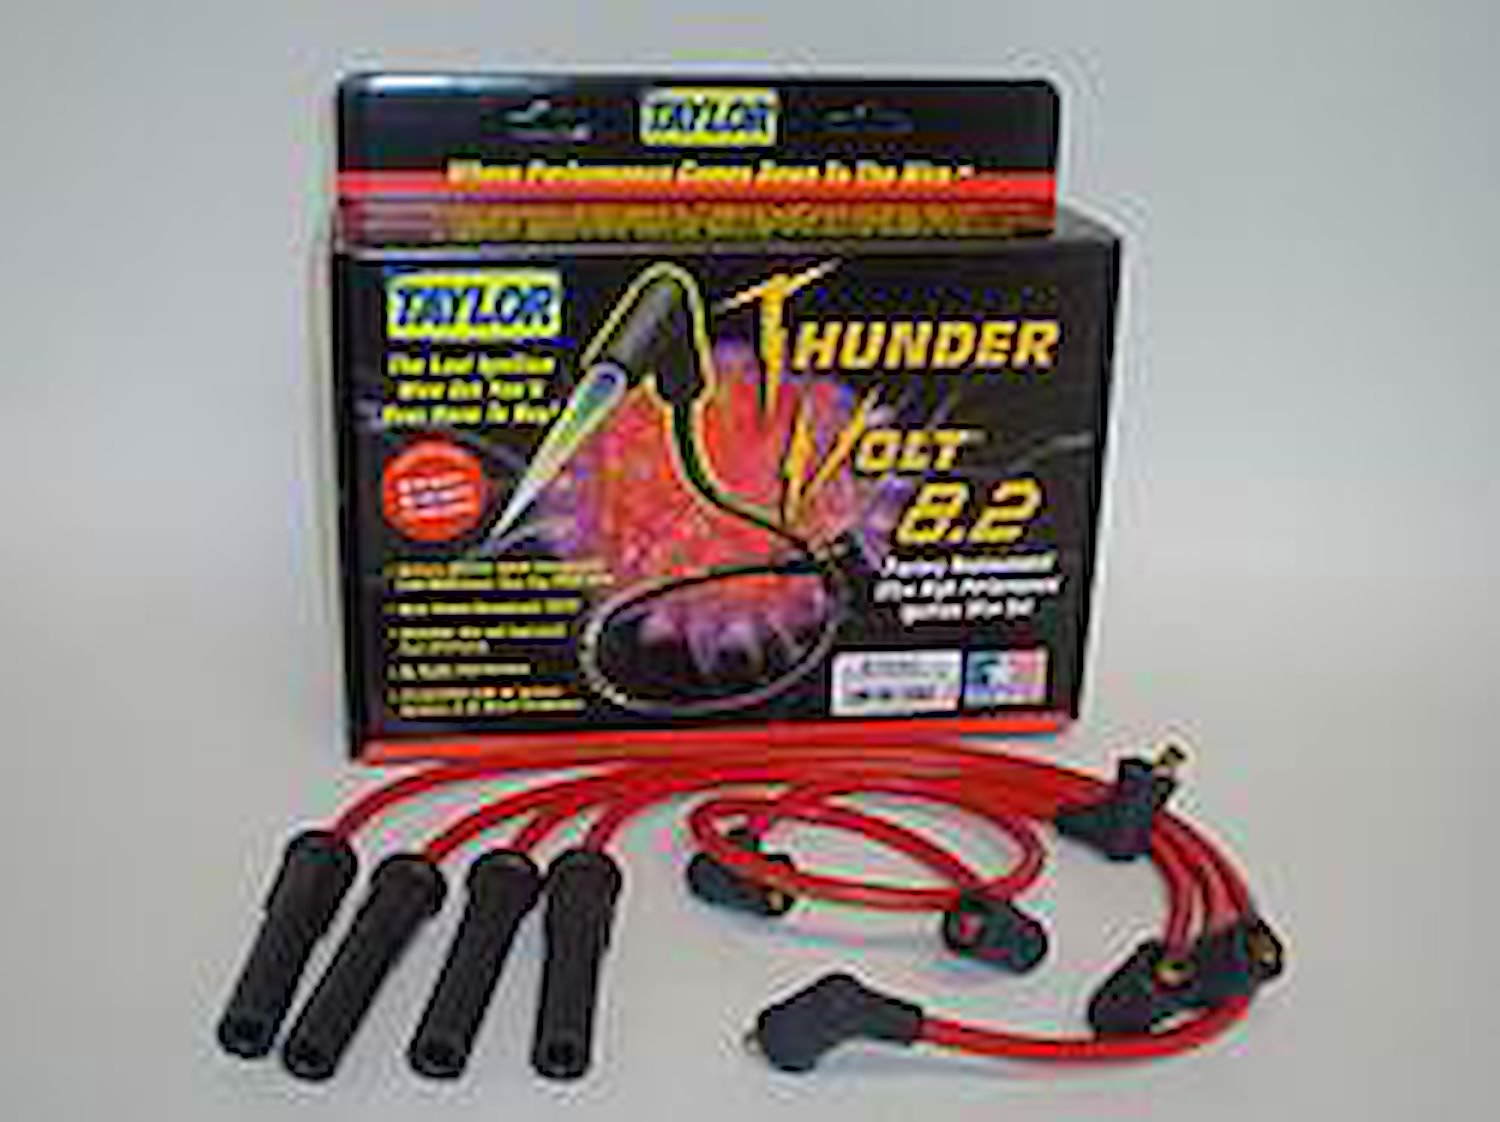 ThunderVolt 8.2mm Spark Plug Wires 1983-92 Toyota 2.4L